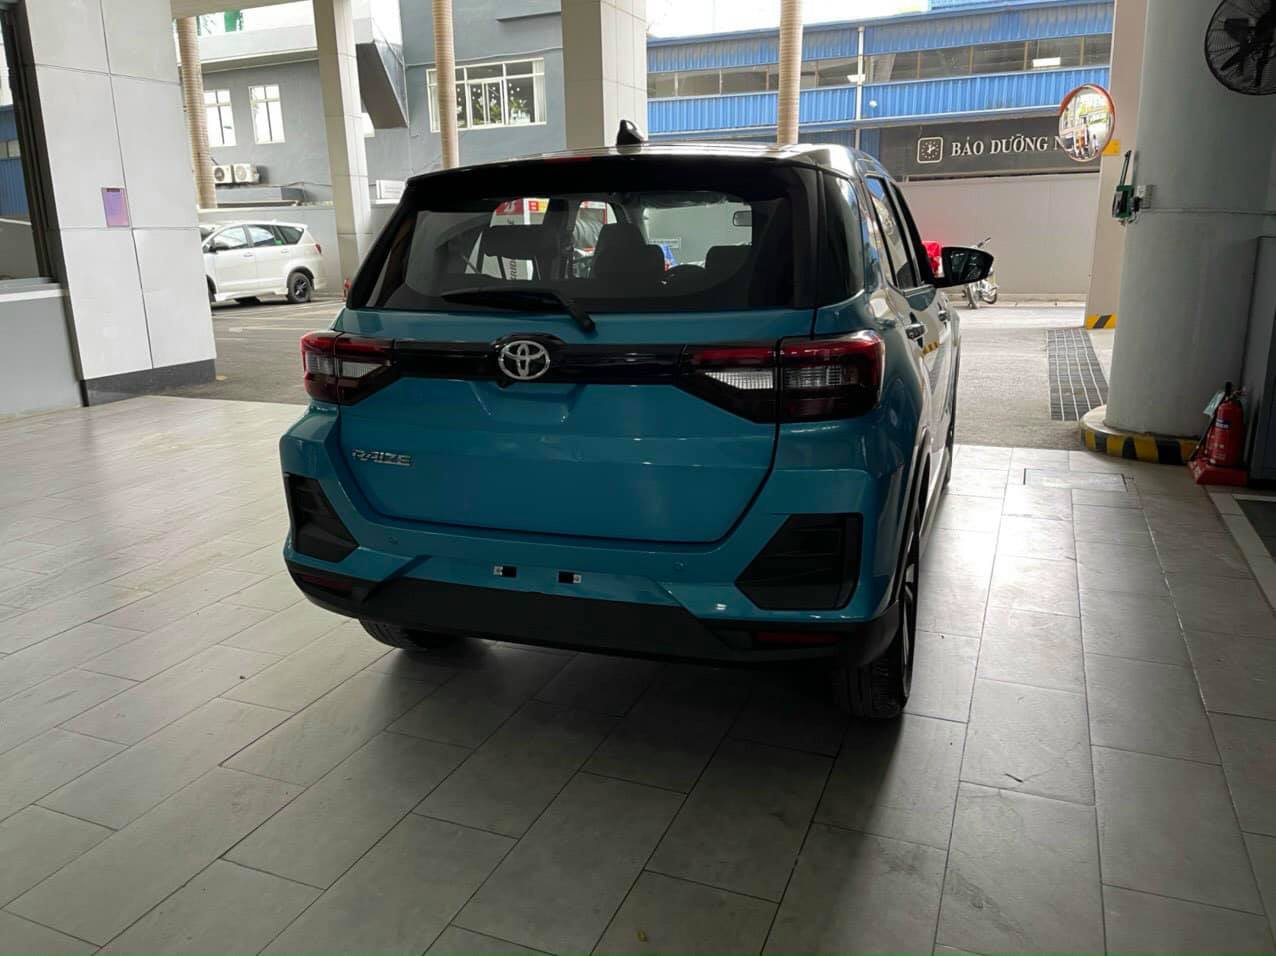 Toyota Raize chốt ngày ra mắt Việt Nam - Đối thủ của Kia Sonet tuy ra sau nhưng đang gây áp lực về giá và trang bị - Ảnh 5.